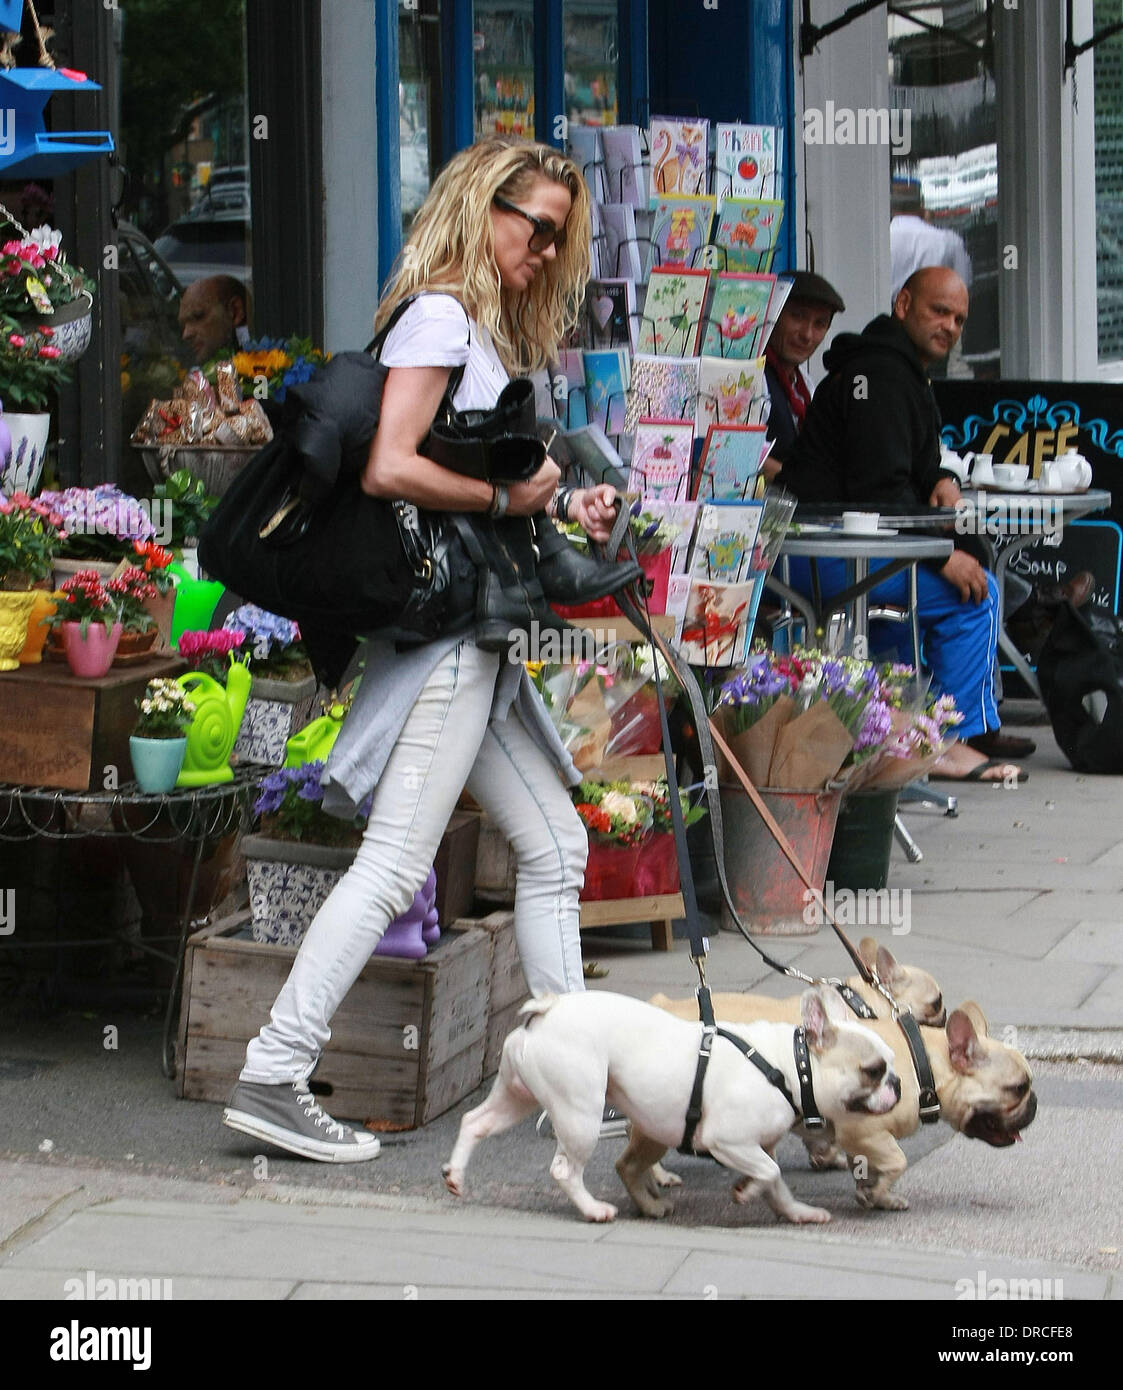 Sarah Harding luchas para pasear a sus tres perros mientras en Londres Londres, Inglaterra - 17.07.12 Foto de stock